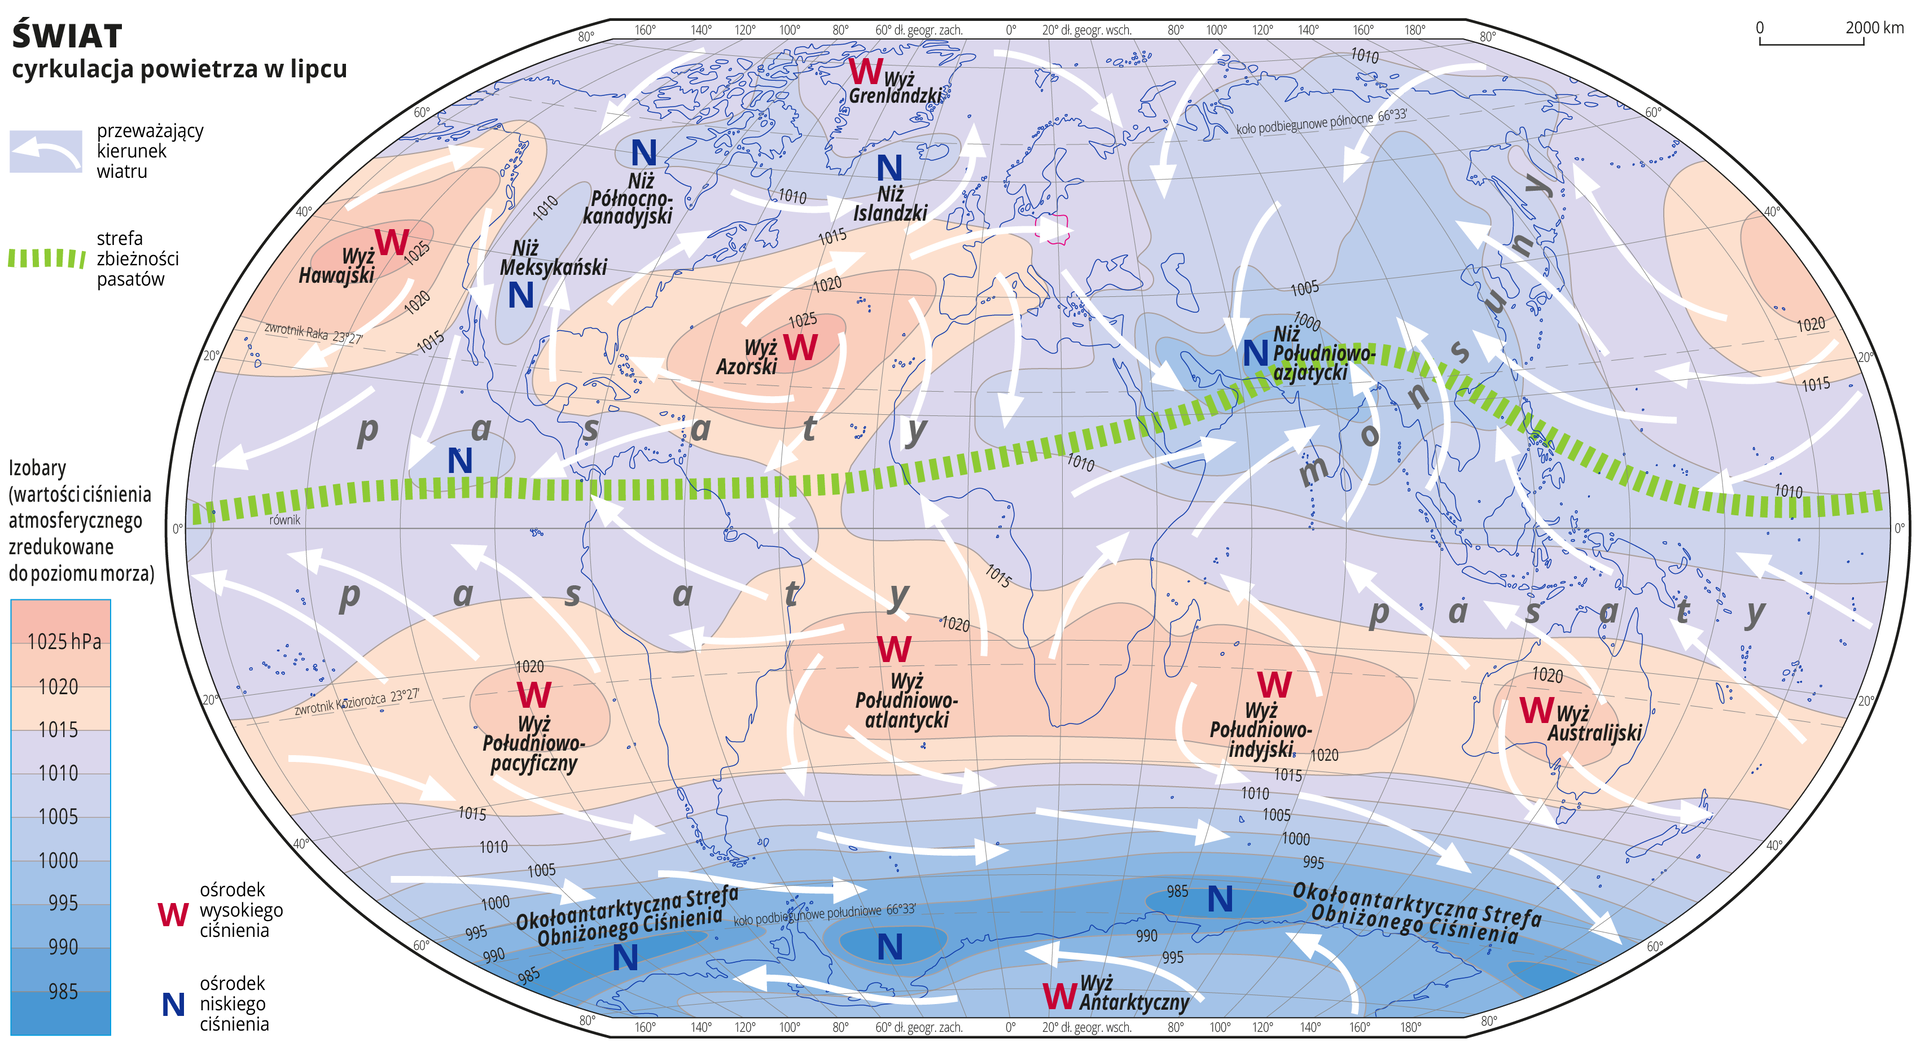 Ilustracja przedstawia mapę świata i obrazuje cyrkulację powietrza w lipcu. Na mapie kolorami zaznaczono wartości ciśnienia atmosferycznego zredukowane do poziomu morza. Odcienie koloru czerwonego oznaczają obszary o wysokim ciśnieniu, odcienie koloru niebieskiego oznaczają obszary o niskim ciśnieniu. Obszary o wysokim ciśnieniu położone są na półkuli północnej na oceanach w pobliżu Zwrotnika Raka i na Grenlandii, a na półkuli południowej wzdłuż Zwrotnika Koziorożca i w środkowej części Antarktydy. Obszary o niskim ciśnieniu atmosferycznym położone są w Ameryce Północnej, Islandii, Azji, oraz na obszarze wód otaczających Antarktydę. Czerwonymi literami W opisano ośrodki wysokiego ciśnienia, niebieskimi literami N opisano ośrodki niskiego ciśnienia. Podano również nazwy ośrodków wysokiego i niskiego ciśnienia. Na mapie opisano izobary co pięć hektopaskali. Najniższa wartość wynosi dziewięćset osiemdziesiąt pięć hektopaskali, najwyższa wartość wynosi tysiąc dwadzieścia pięć hektopaskali. Białymi strzałkami oznaczono przeważający kierunek wiatru. Strzałki układają się w różnych kierunkach. Zieloną przerywaną linią zaznaczono strefę zbieżności pasatów. Przebiega ona nieco powyżej równika i wchodzi łukiem na tereny południowej części Azji. Opisano pasaty – wzdłuż równika oraz monsuny – na wschodnim wybrzeżu Azji. Mapa pokryta jest równoleżnikami i południkami. Dookoła mapy w białej ramce opisano współrzędne geograficzne co dwadzieścia stopni. Po lewej stronie mapy w legendzie umieszczono prostokątny pionowy pasek. Pasek podzielono na dziesięć części. U góry trzy odcienie koloru czerwonego, na dole siedem odcieni koloru niebieskiego od jasnego do ciemnoniebieskiego. Linie pomiędzy odcieniami kolorów – izobary – opisano co pięć hektopaskali. Kolor czerwony oznacza obszary o wysokim ciśnieniu – powyżej tysiąc piętnaście hektopaskali, kolor niebieski oznacza obszary o niskim ciśnieniu.